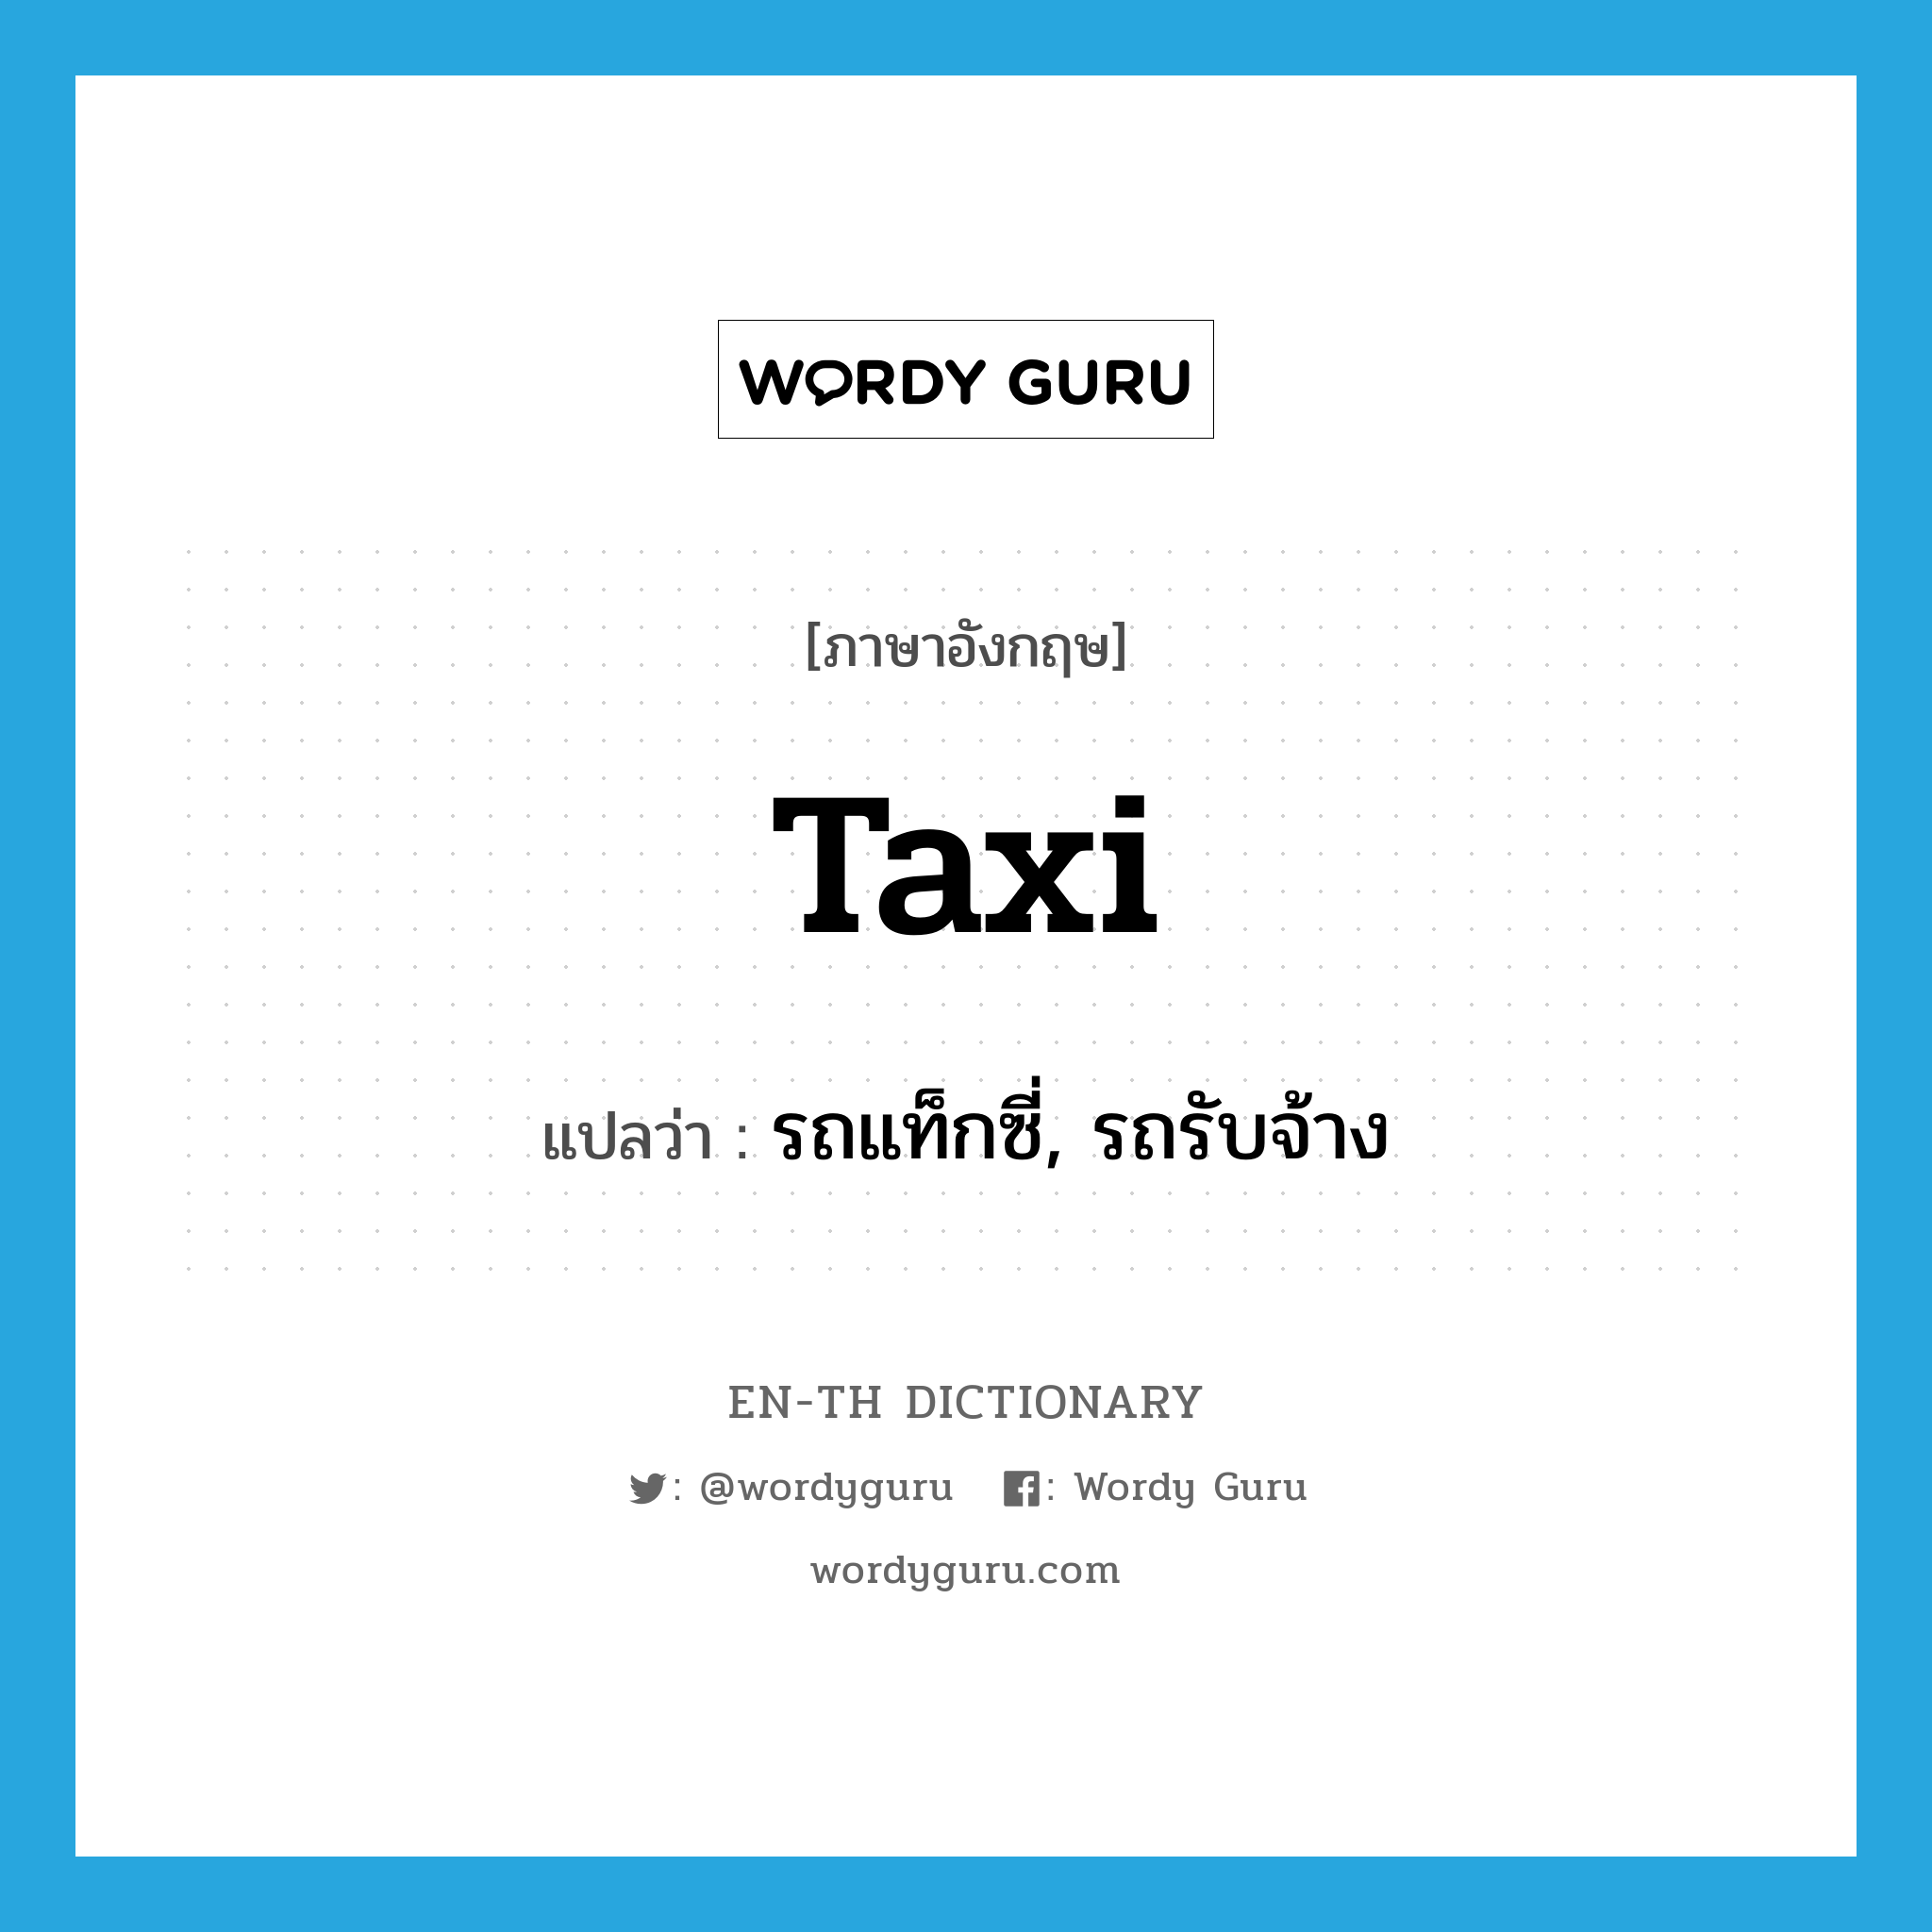 รถแท็กซี่, รถรับจ้าง ภาษาอังกฤษ?, คำศัพท์ภาษาอังกฤษ รถแท็กซี่, รถรับจ้าง แปลว่า taxi ประเภท N หมวด N